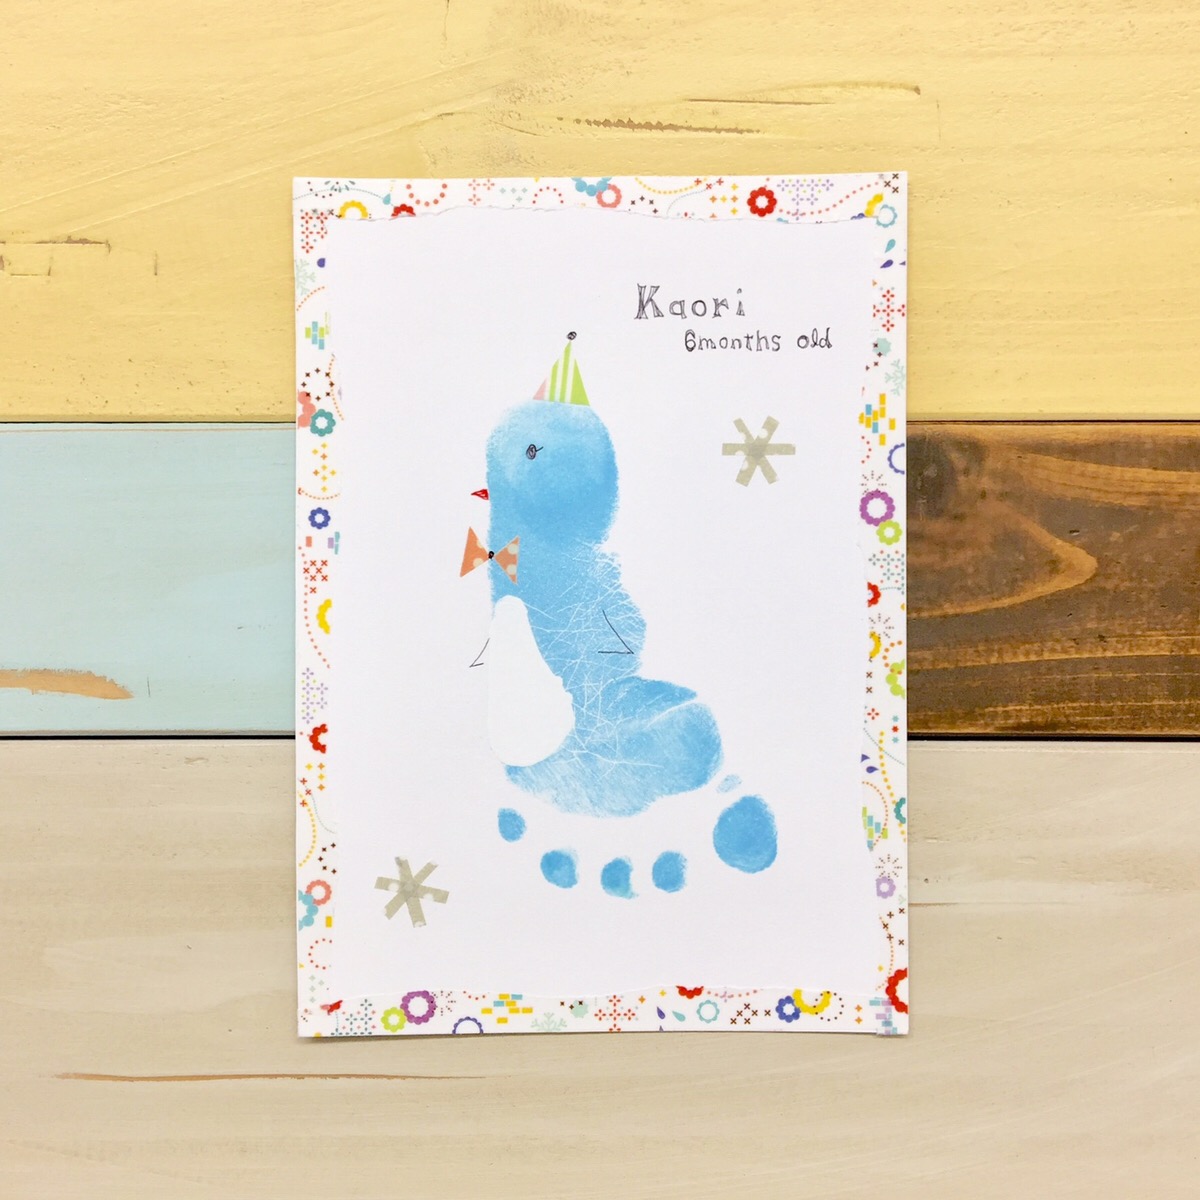 足形アート ペンギンの作り方 赤ちゃんの 今 を残す手形アートpetapeta Art 赤ちゃんの 今 を残す手形アートpetapeta Art